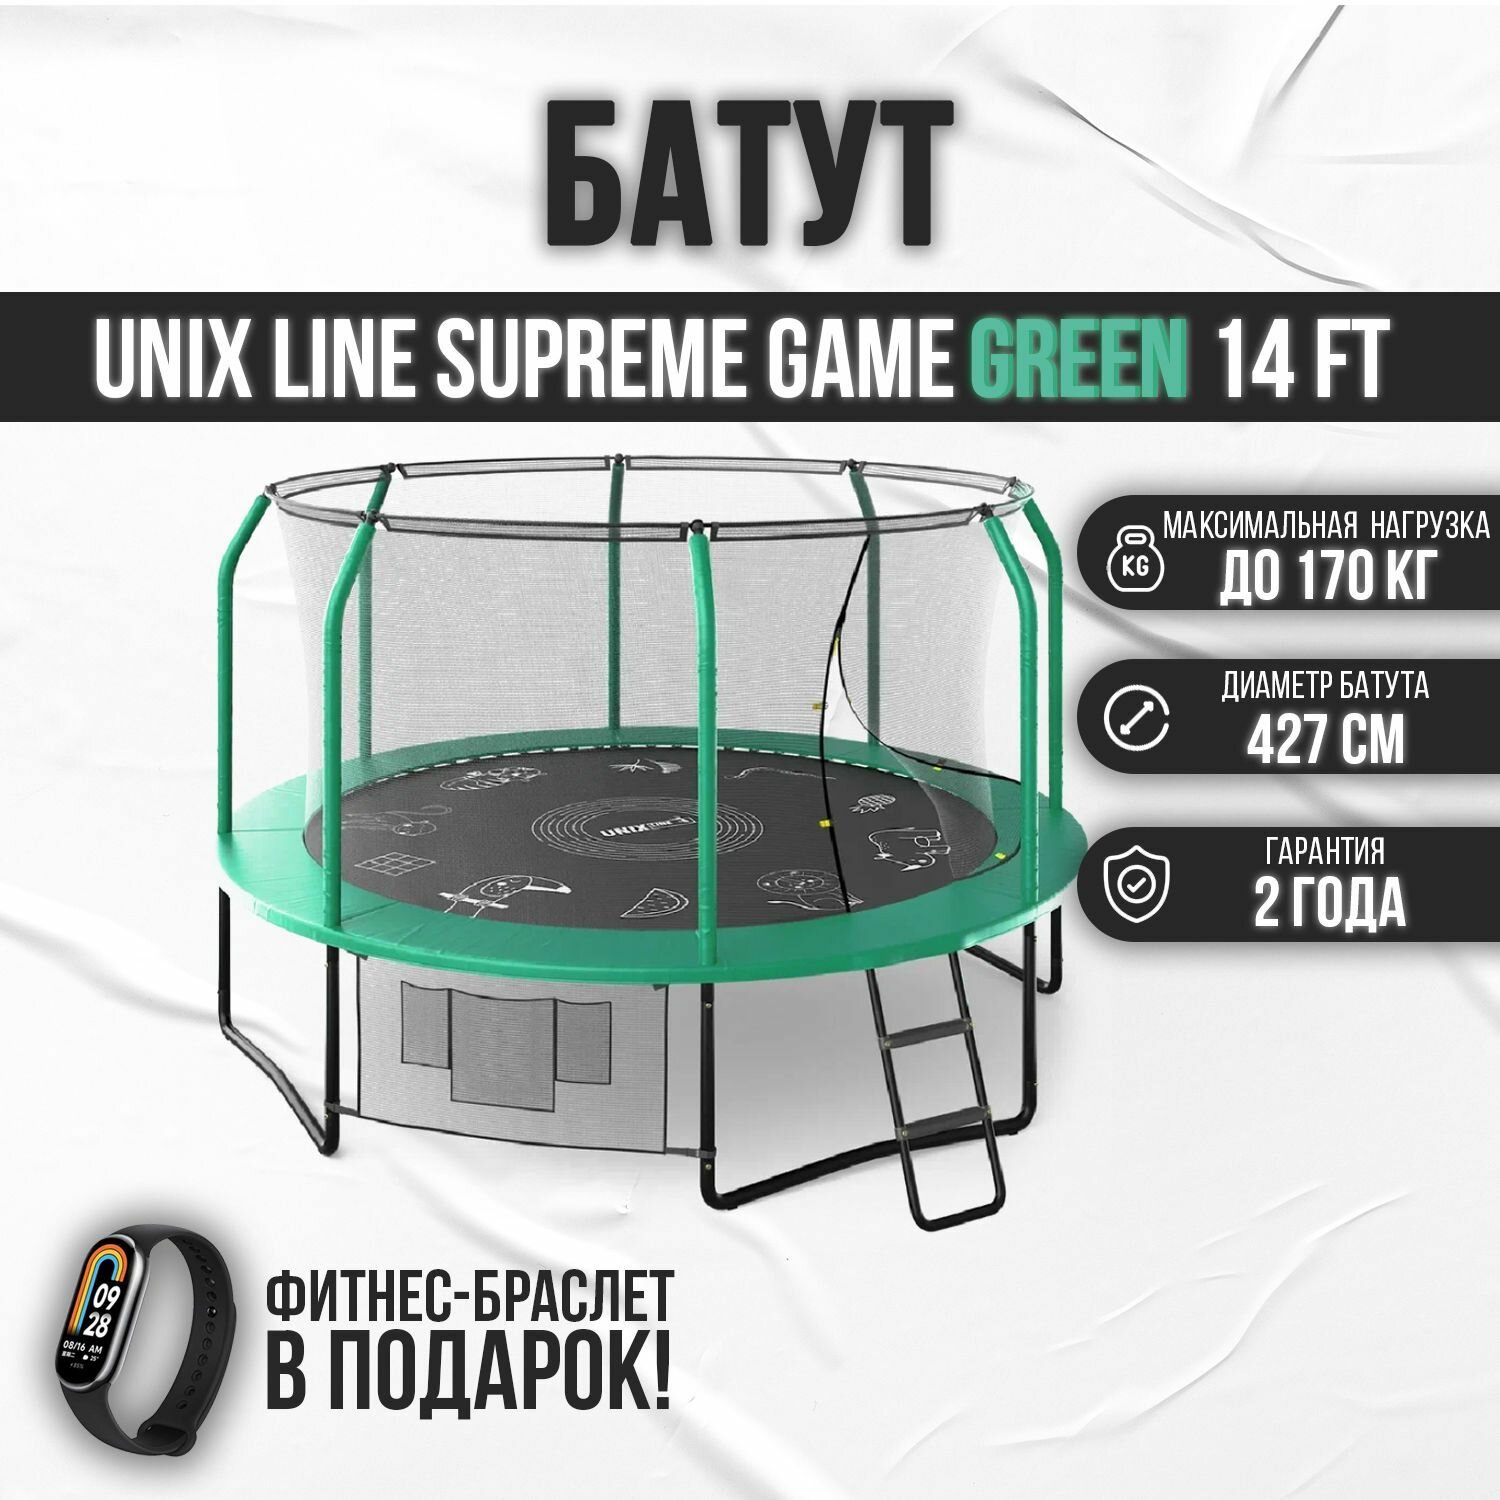 Батут каркасный UNIX line SUPREME GAME 14 ft (green) / с защитной сеткой / с лестницей / для детей / для дачи / для улицы / до 170 кг / диаметр 427 см + Фитнес браслет